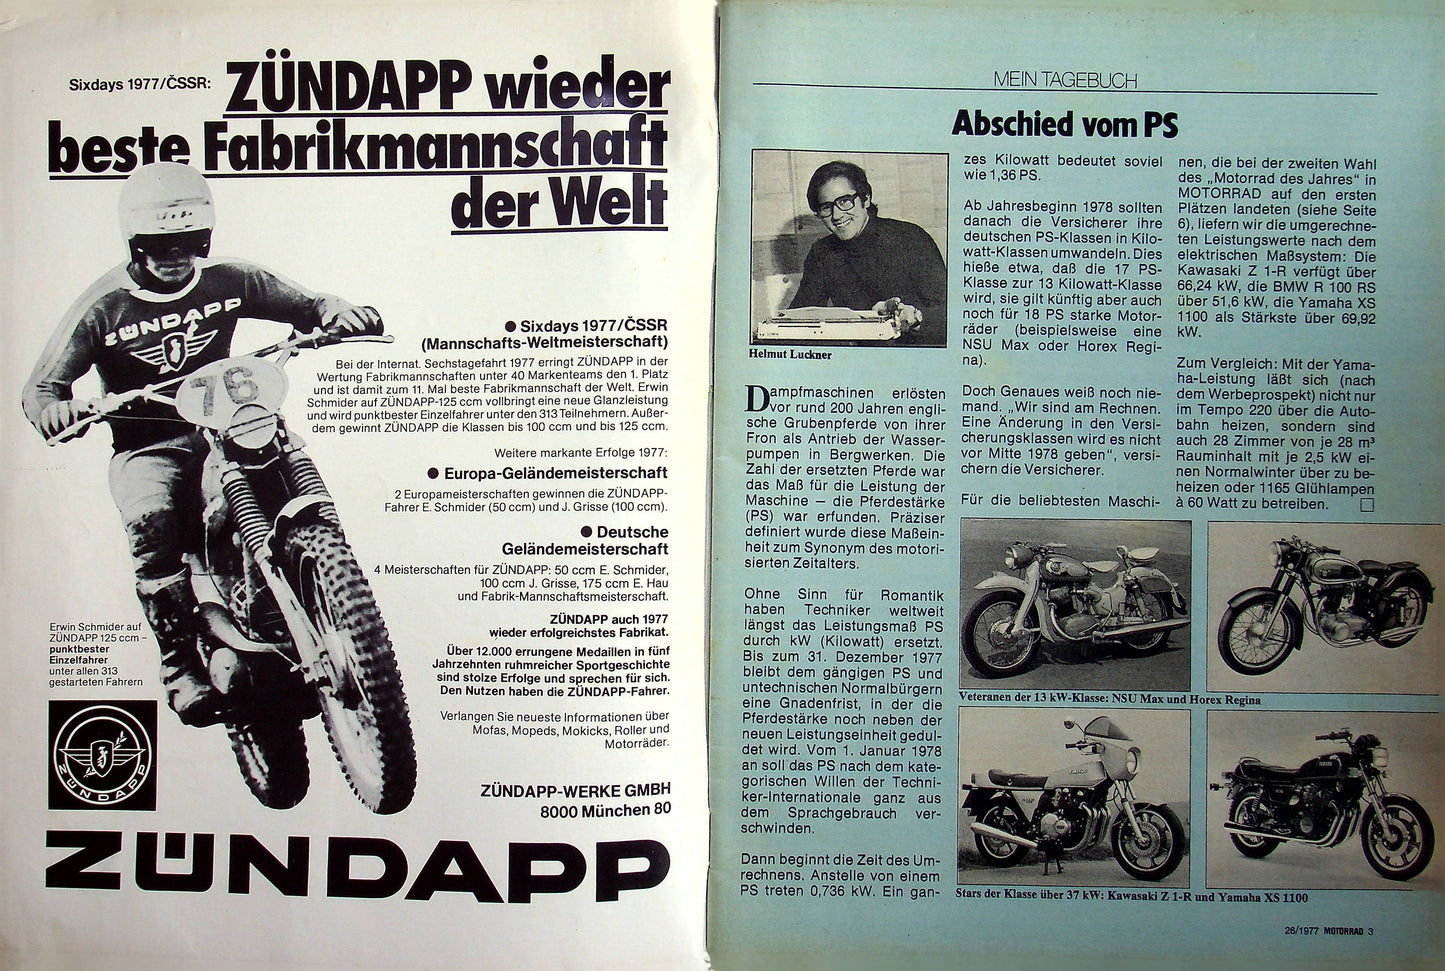 Motorrad 26/1977